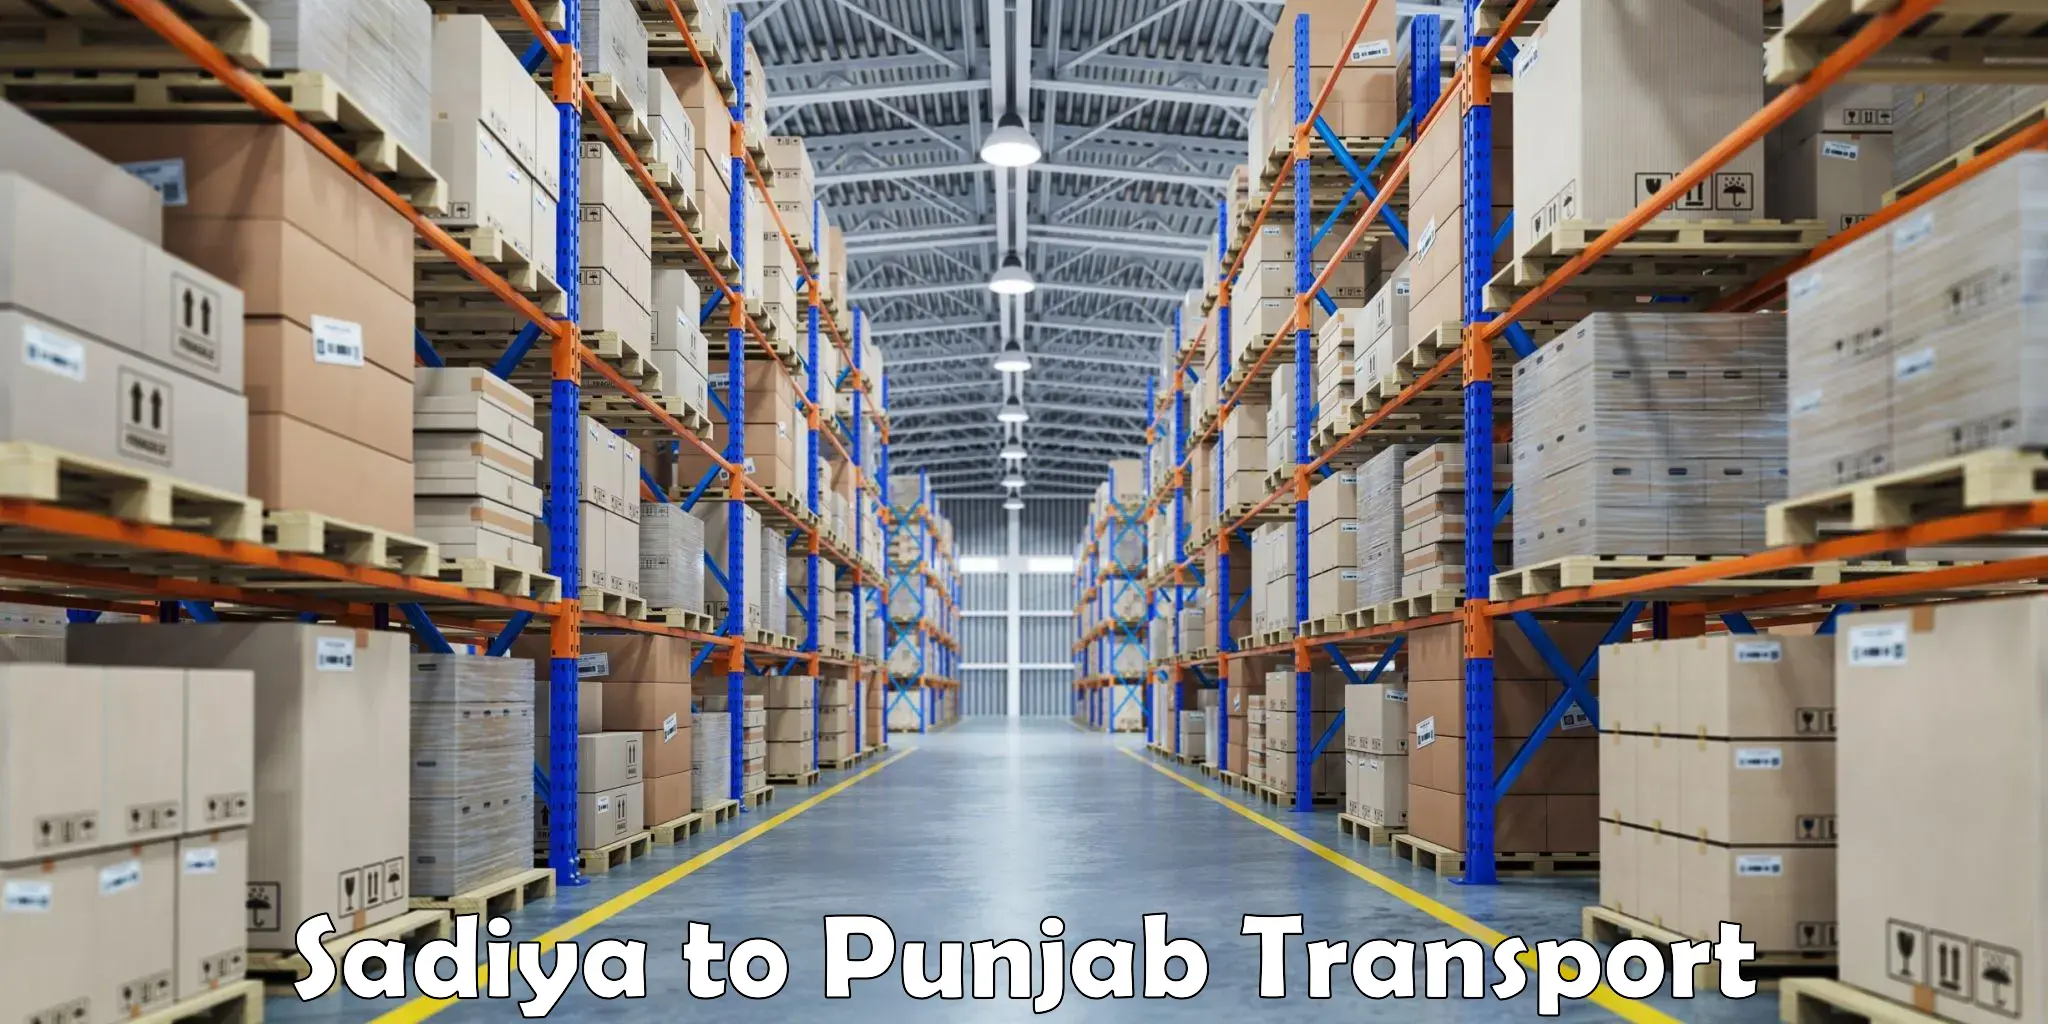 Air freight transport services in Sadiya to Punjab